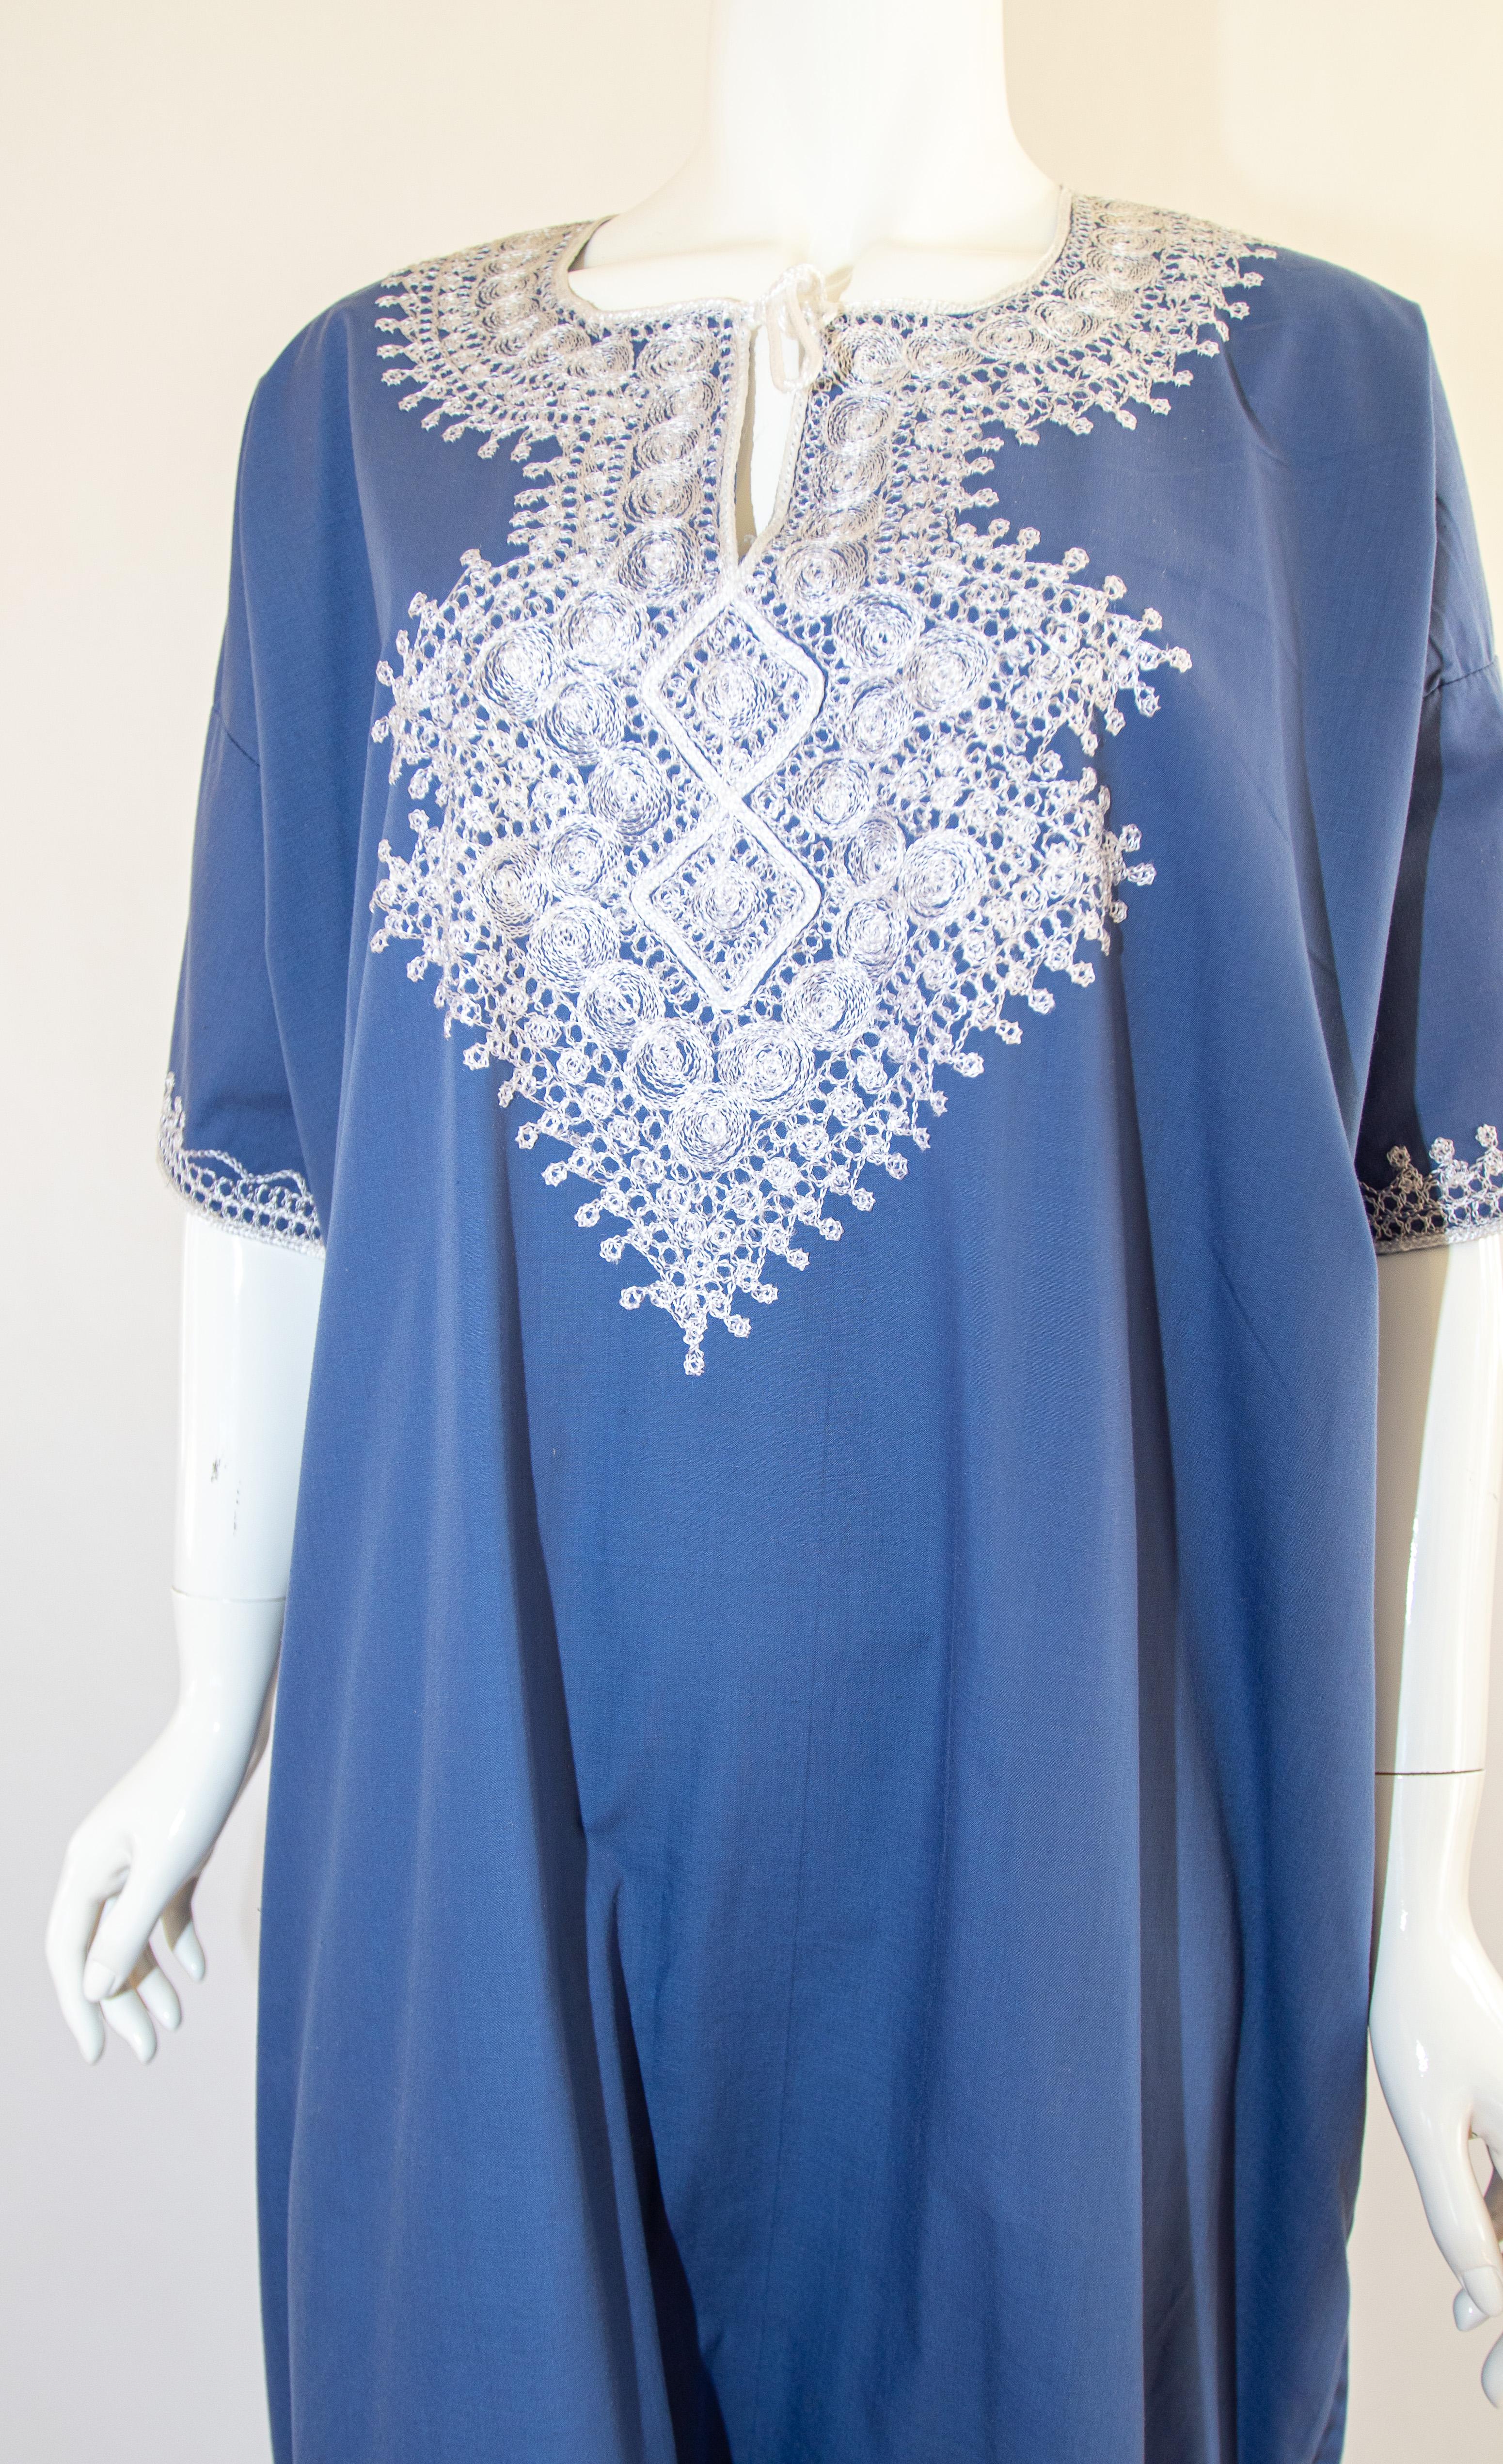 Caftan marocain bohème de couleur bleue brodé de fils blancs.
vers les années 1980.
Cette longue robe maxi en coton kaftan d'été est brodée de motifs mauresques traditionnels.
Le kaftan présente une encolure traditionnelle, avec des fentes latérales